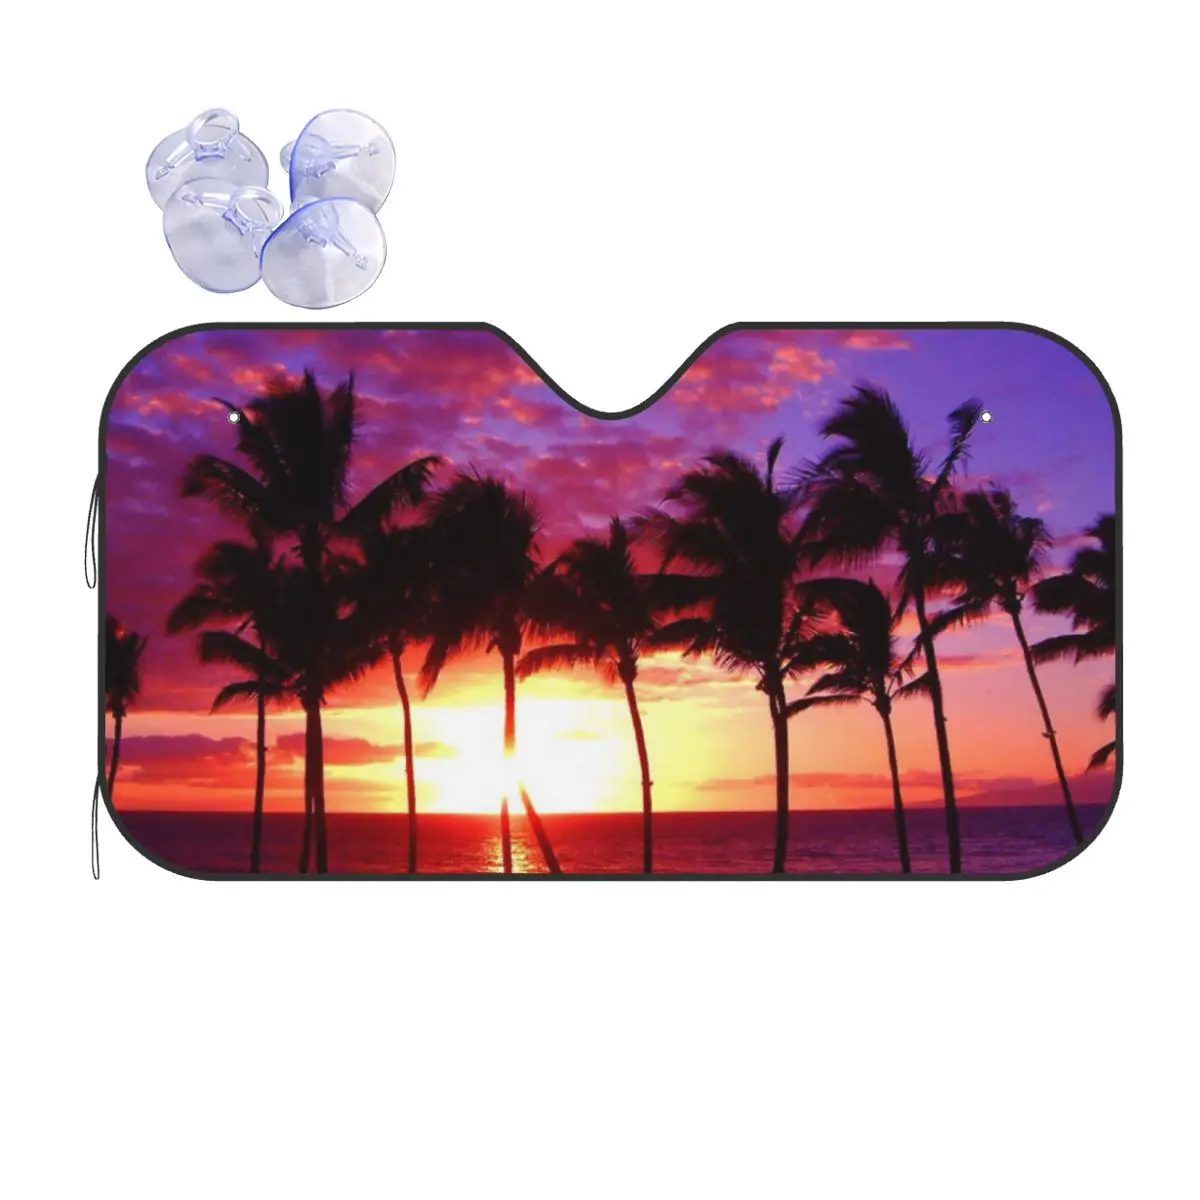 

Sunset Funny Windshield Sunshade 76x140cm Sea Beach Scenery Foils Car Sunshade Sun Shade Protect